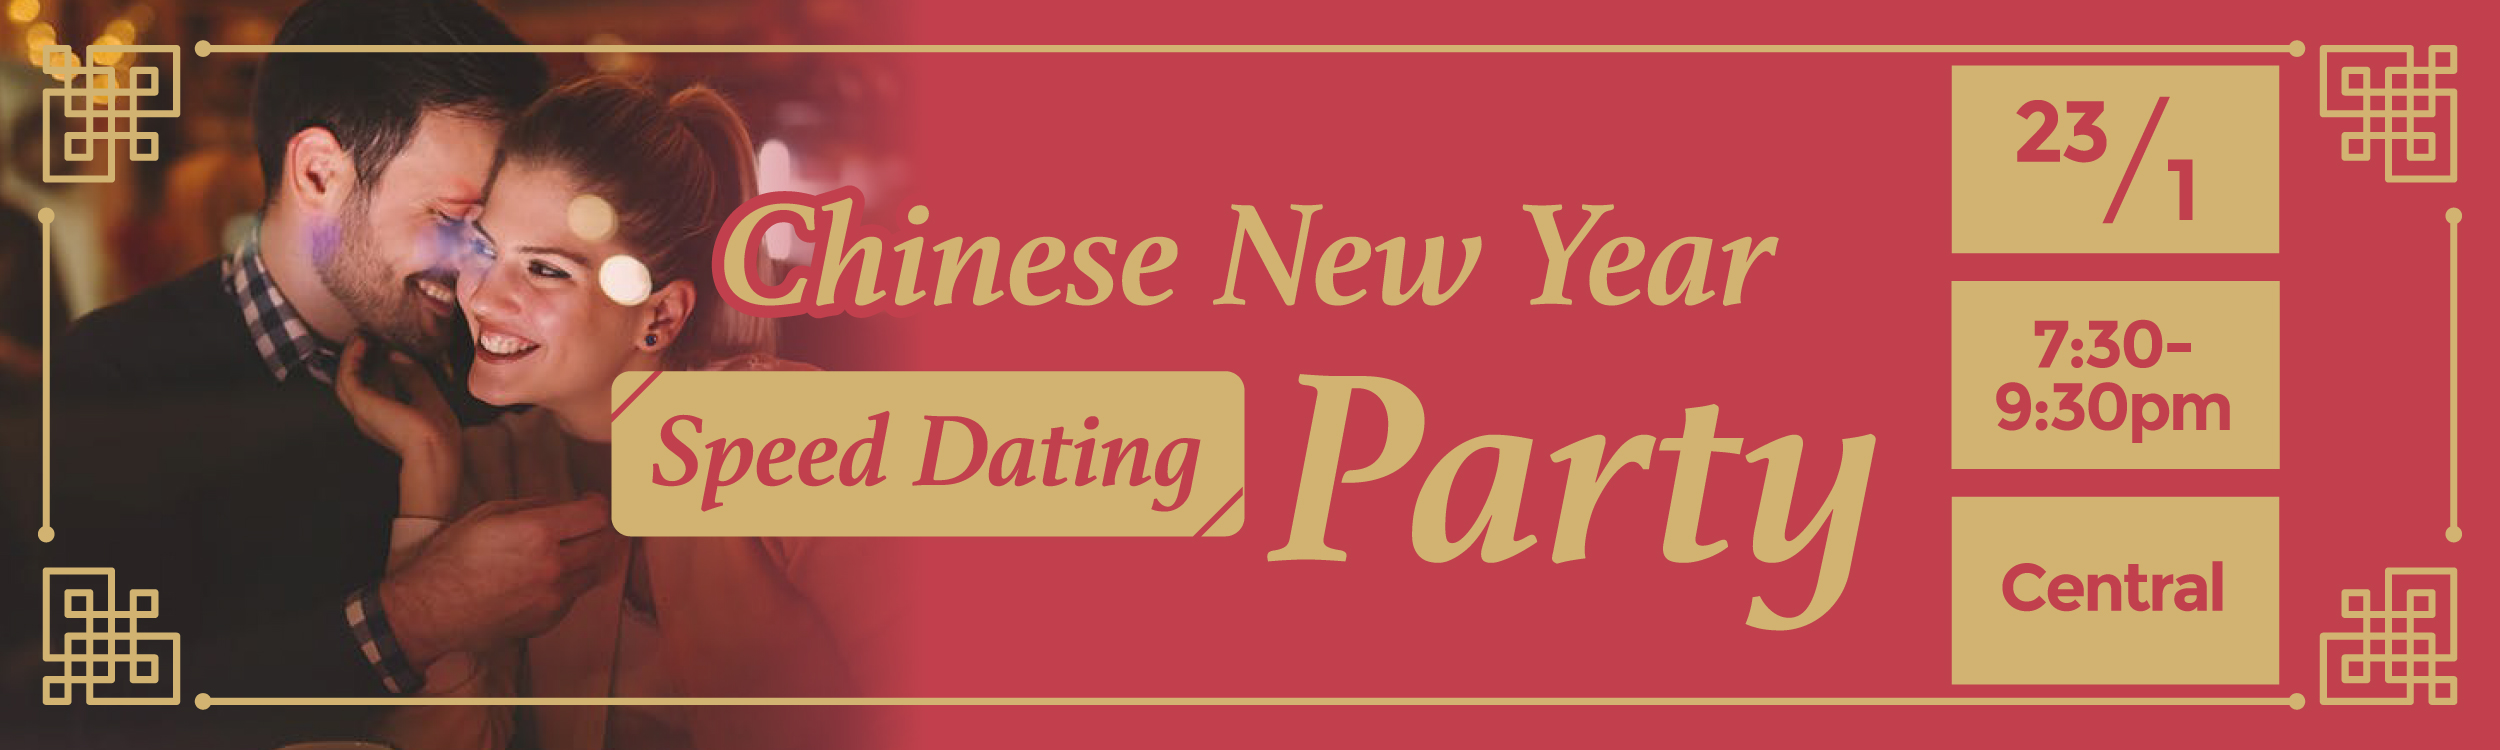 最新Speed Dating約會消息: Chinese New Year Party ‧ Remain M:20 F:24